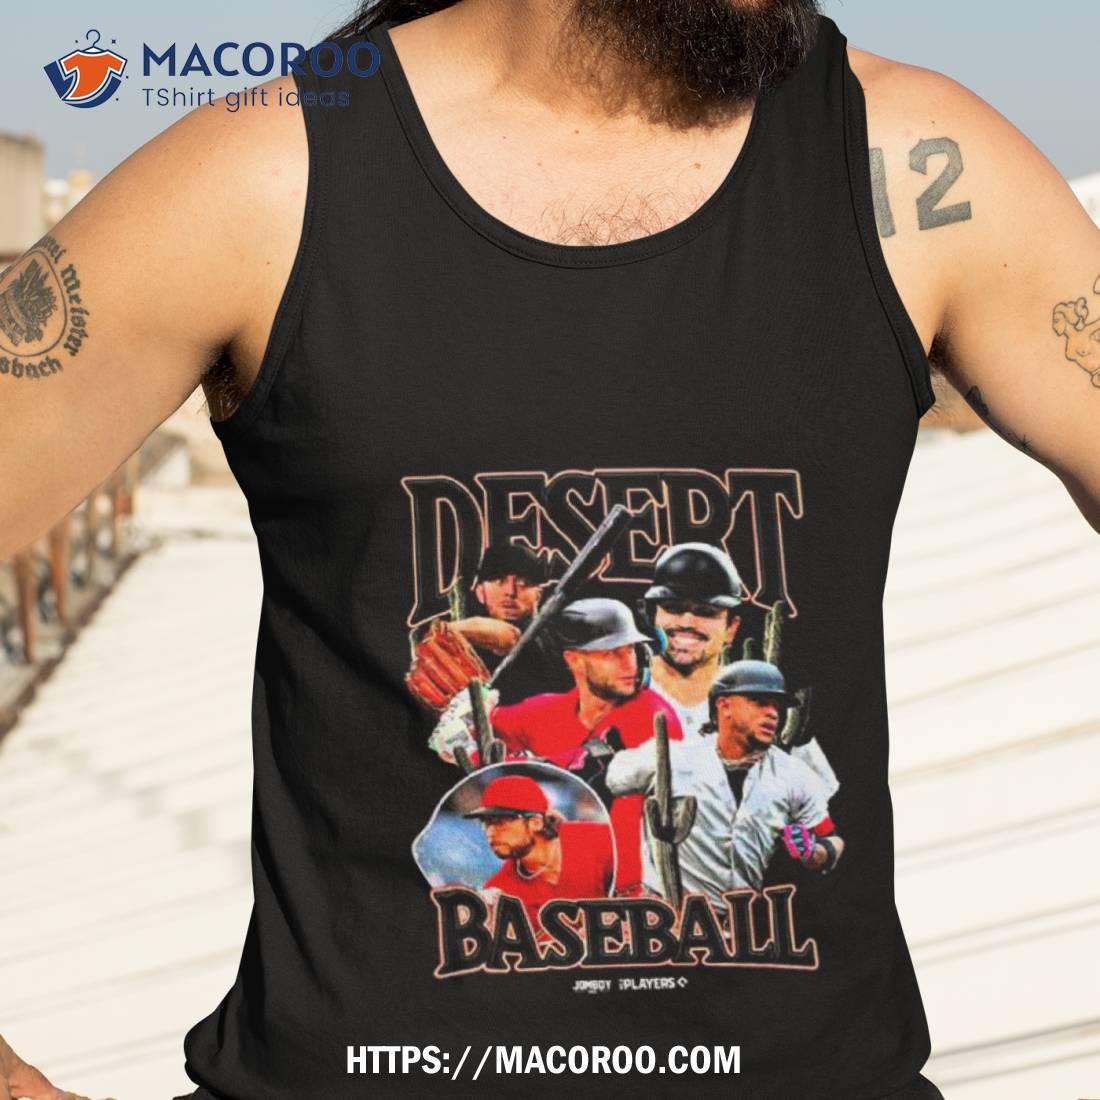 Dbacks Legends Arizona Diamondbacks T-Shirt funny shirts, gift